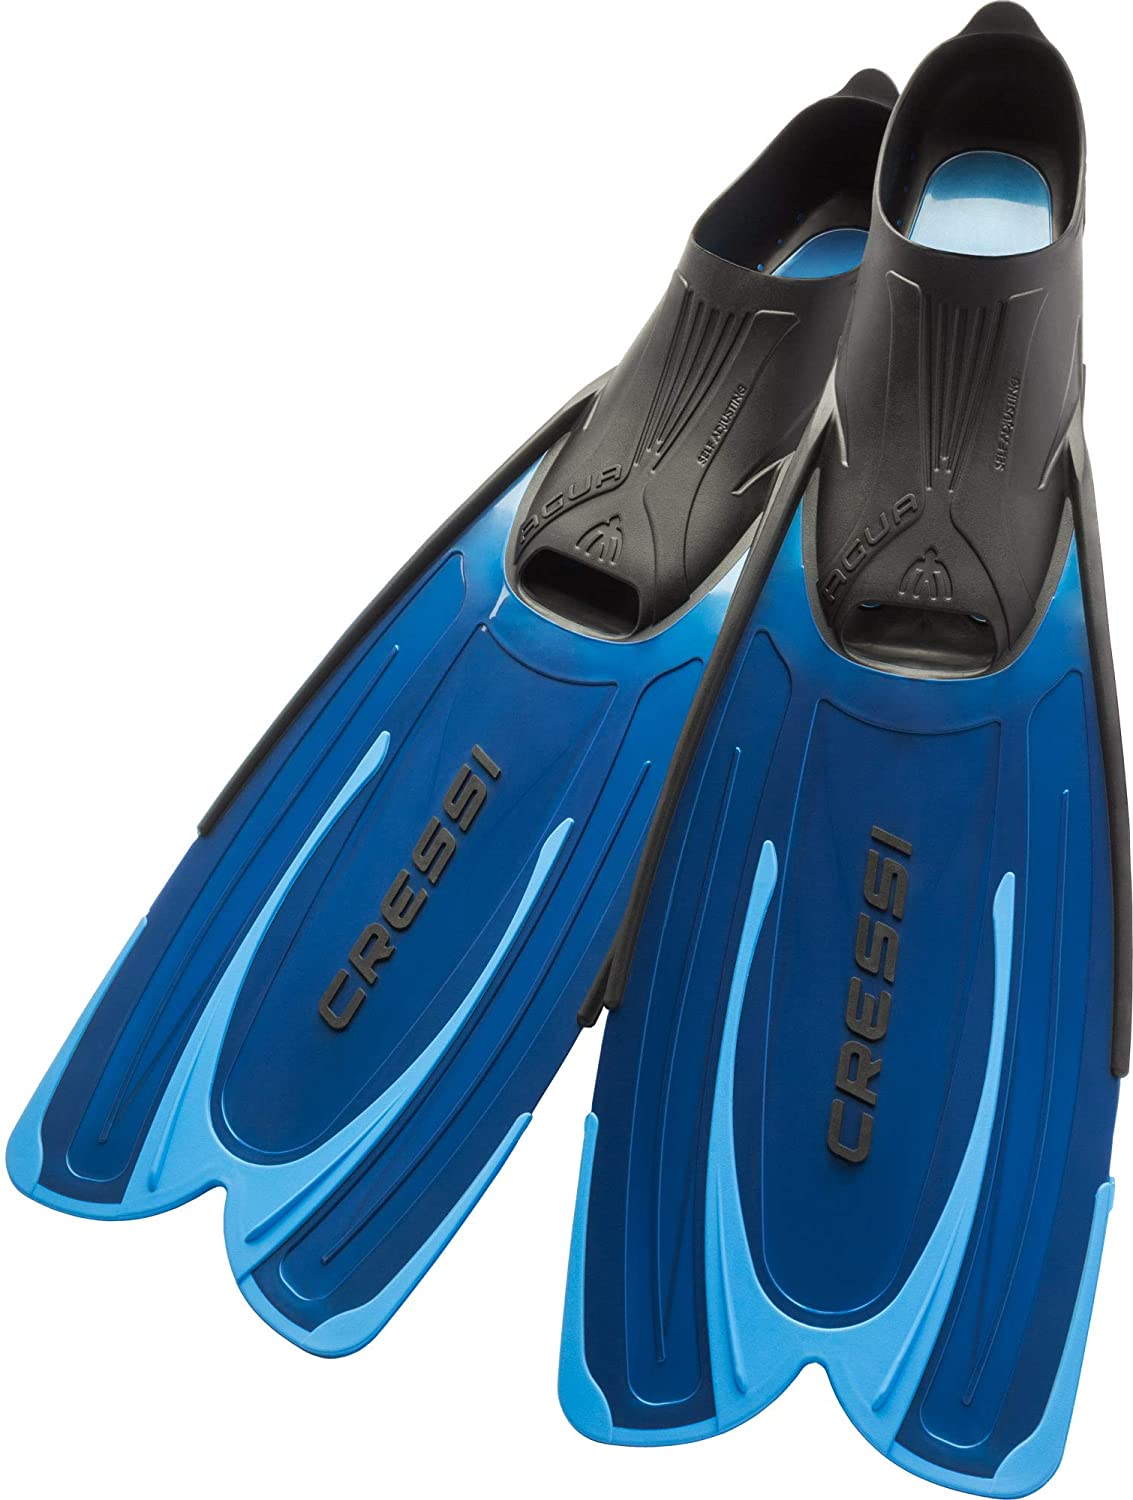 Alomejor Fibbia Regolabili per Pinne da Nuoto Flippers Fibbie di Ricambio per Immersioni Subacquee 